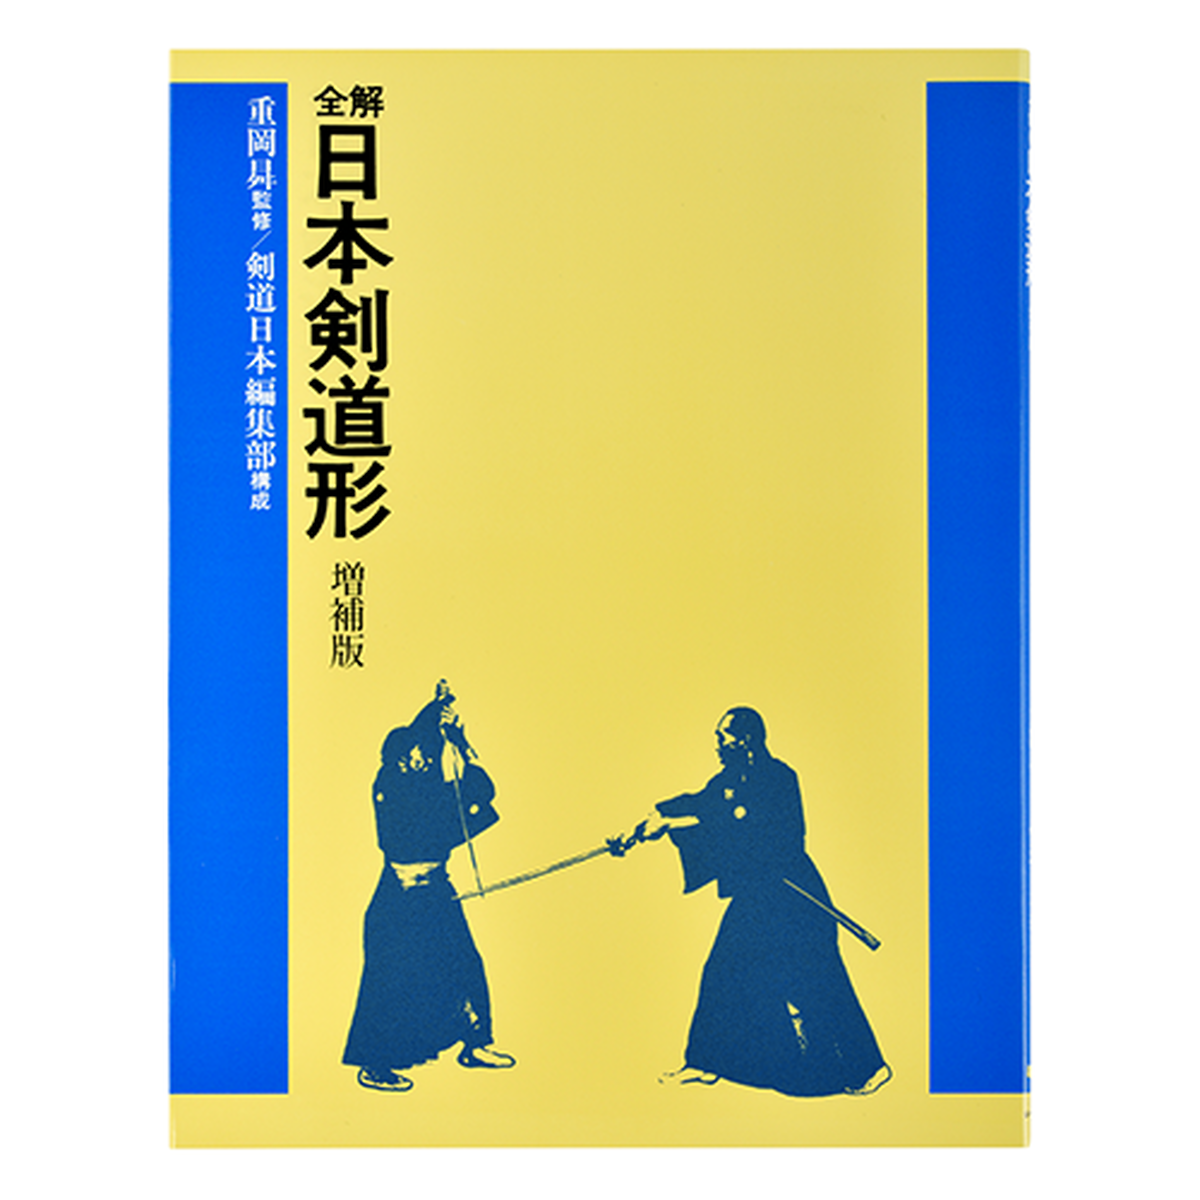 全解 日本剣道形 増補版 剣道日本オフィシャル通販サイト